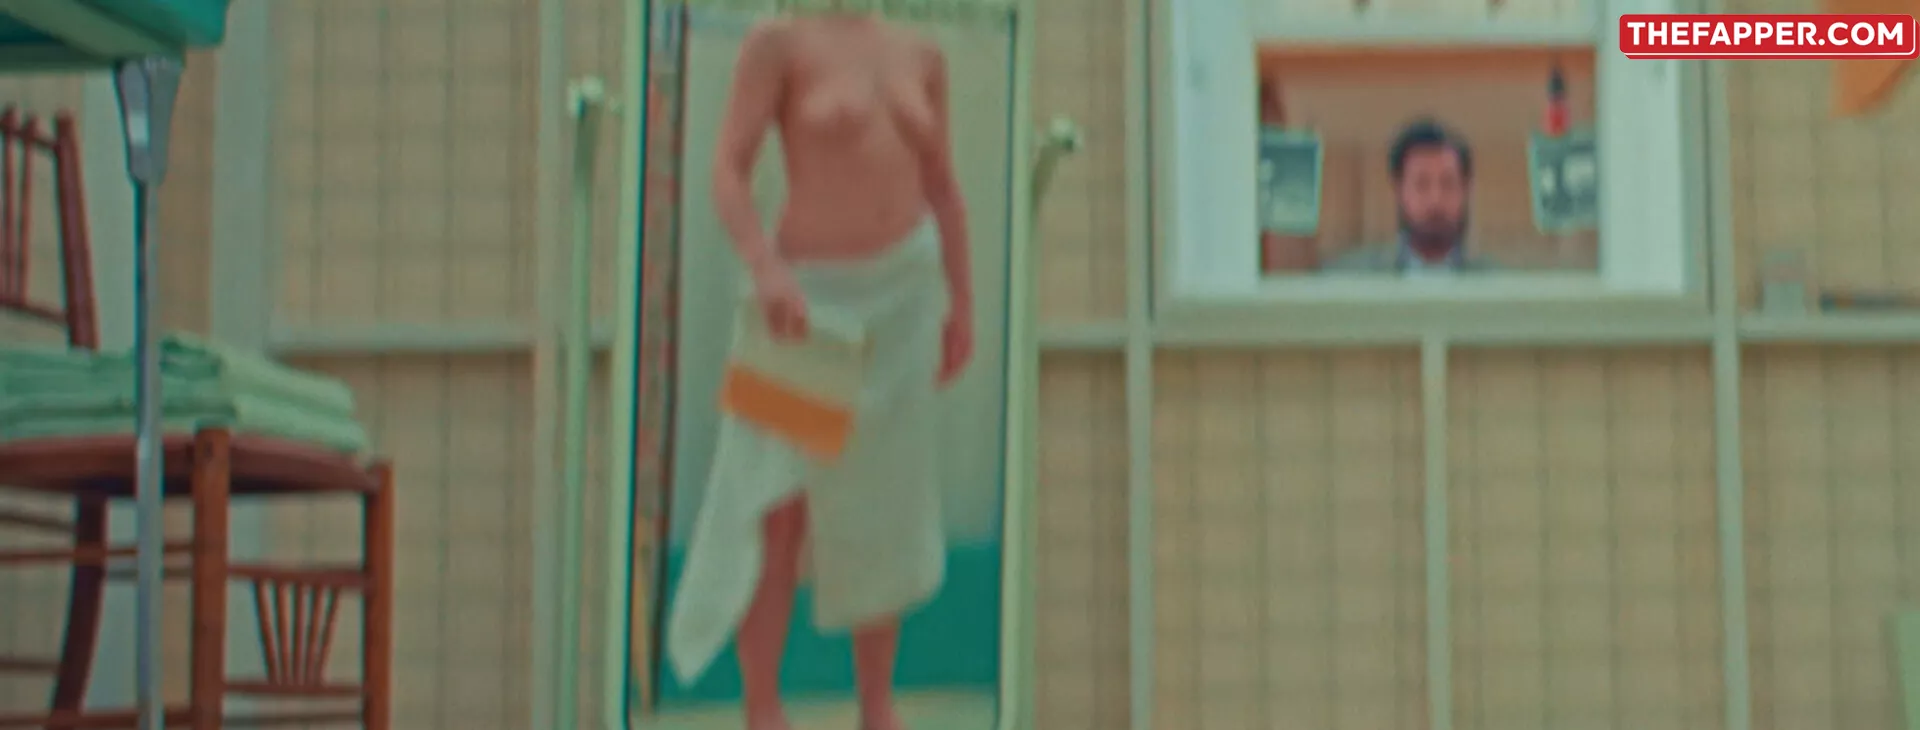 Scarlett Johansson  Onlyfans Leaked Nude Image #o3al7uqJWF